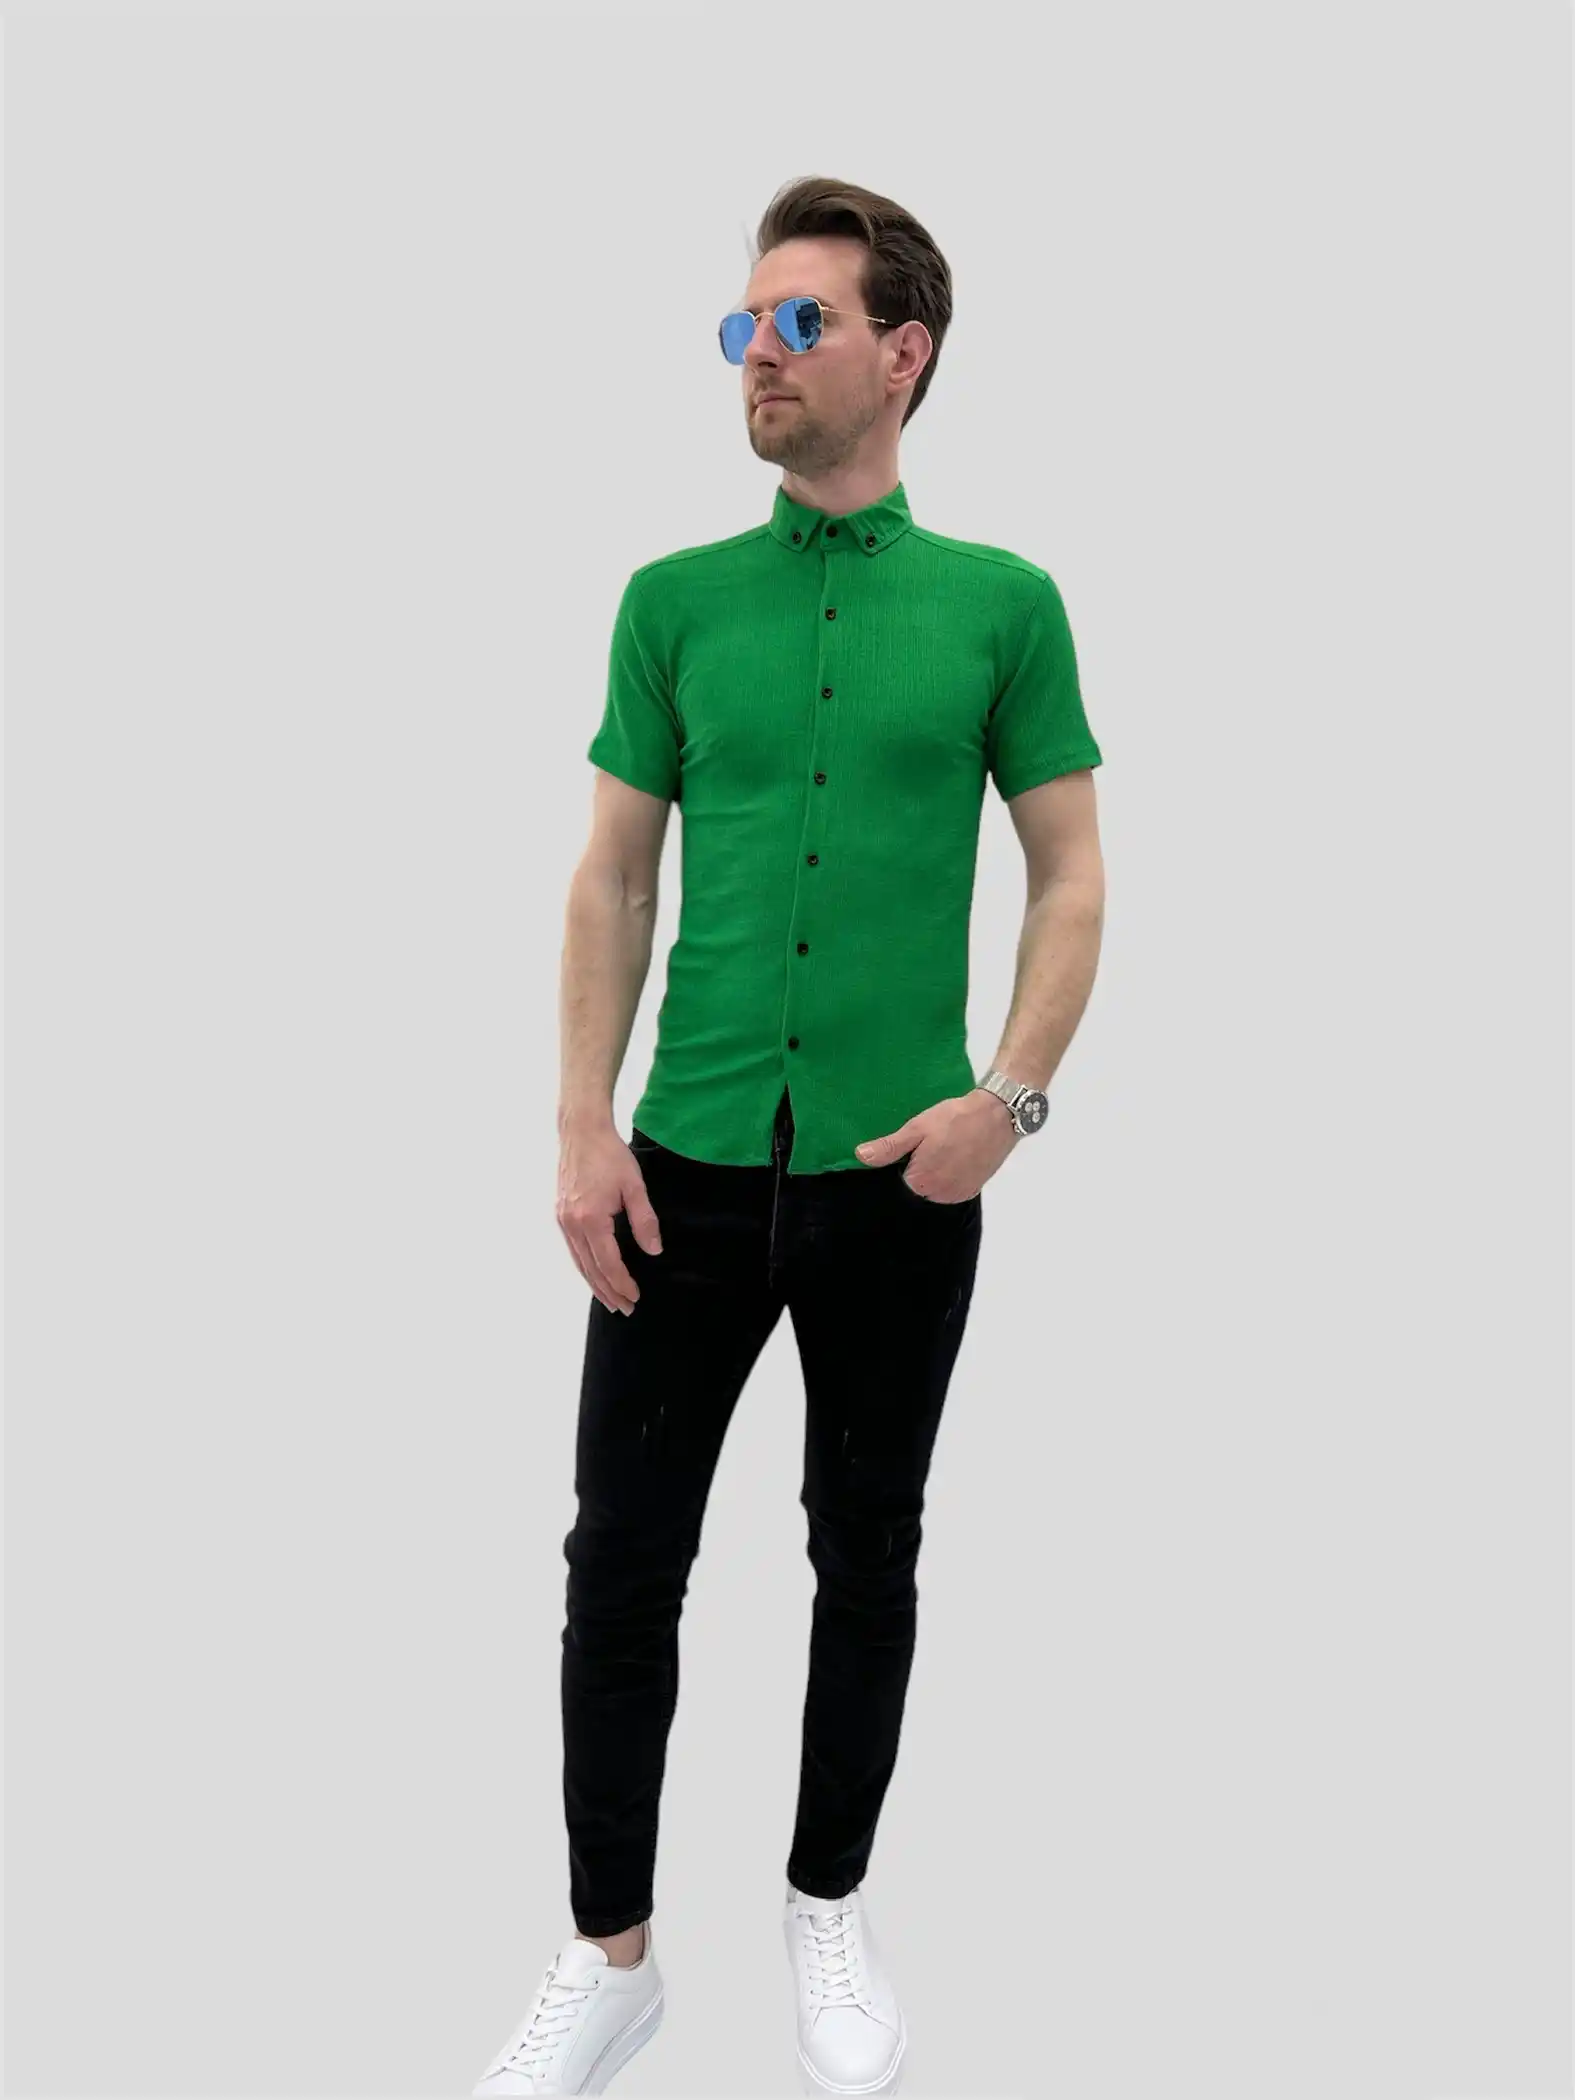 Αντρικό πουκάμισο πράσινο κοντό μανίκι